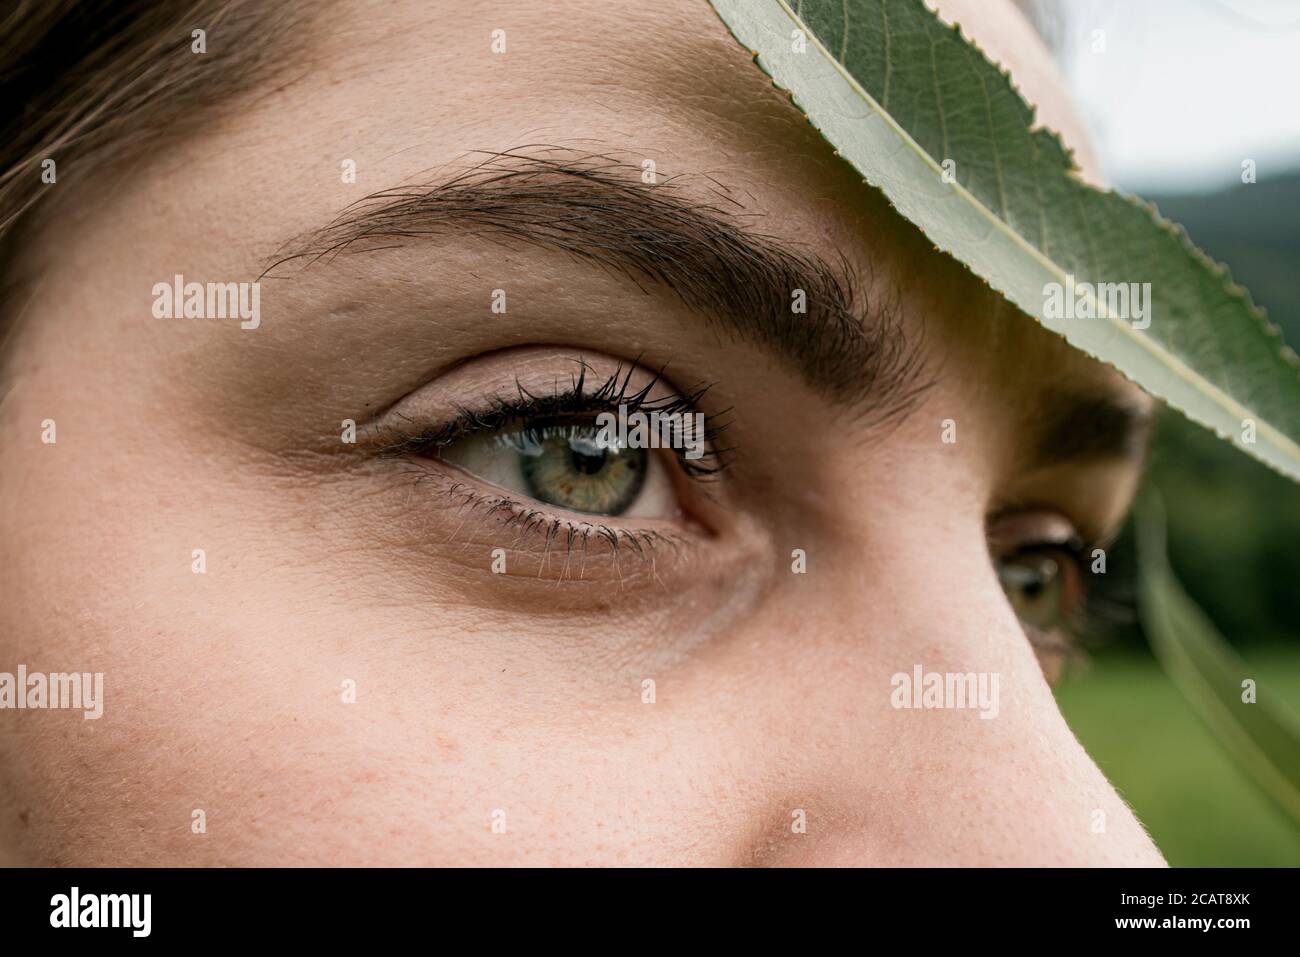 femme yeux couverts de feuille dans la nature concept de masque covid-19 Banque D'Images